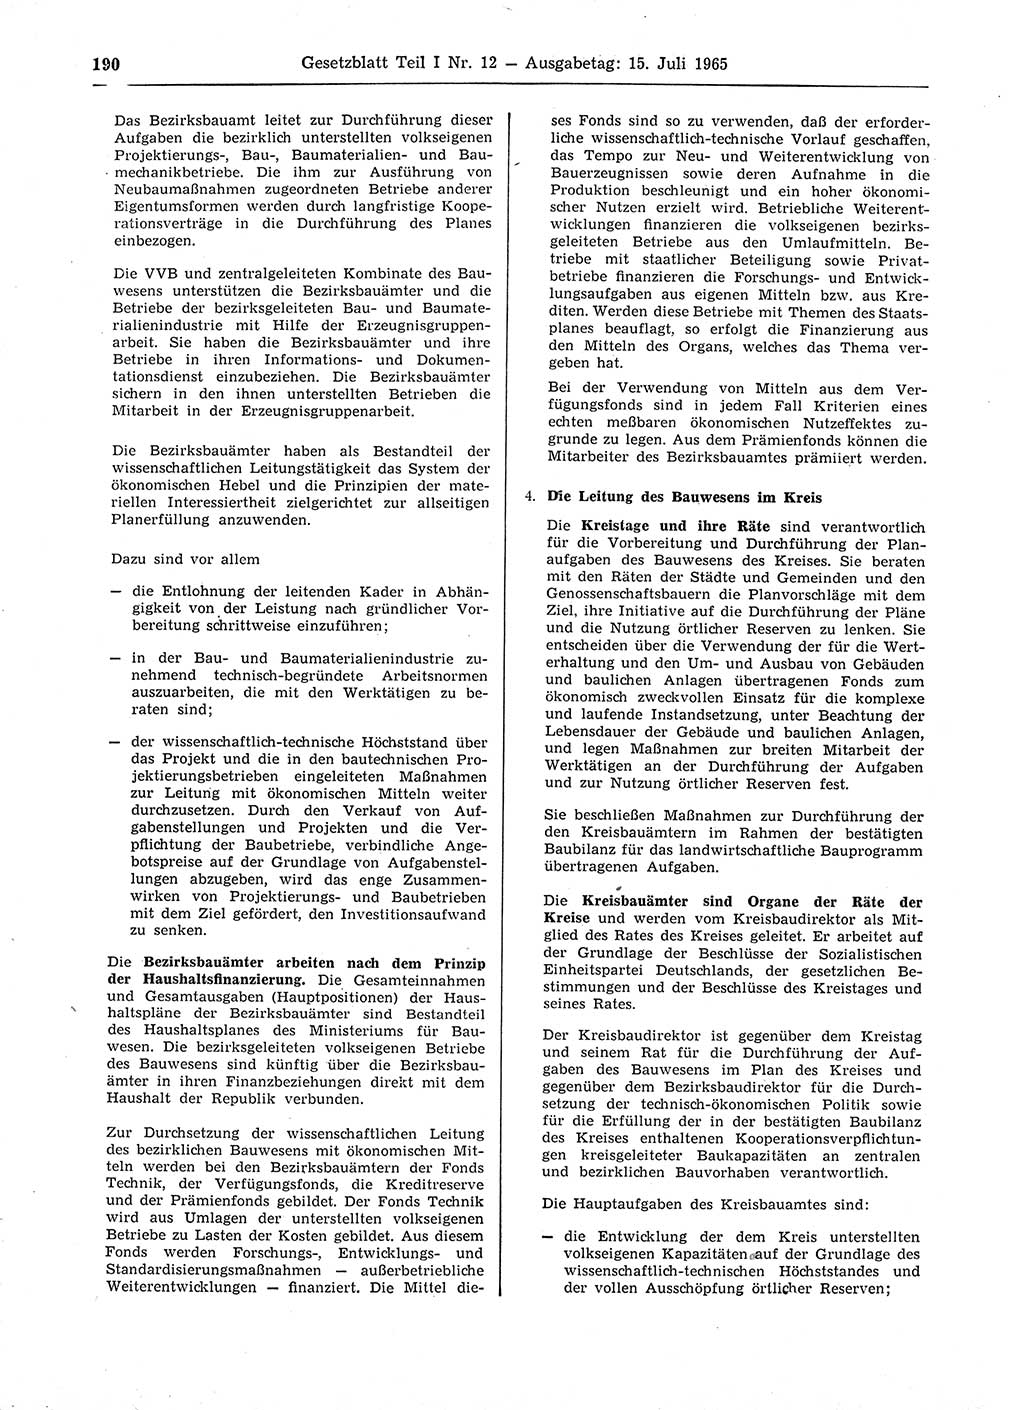 Gesetzblatt (GBl.) der Deutschen Demokratischen Republik (DDR) Teil Ⅰ 1965, Seite 190 (GBl. DDR Ⅰ 1965, S. 190)